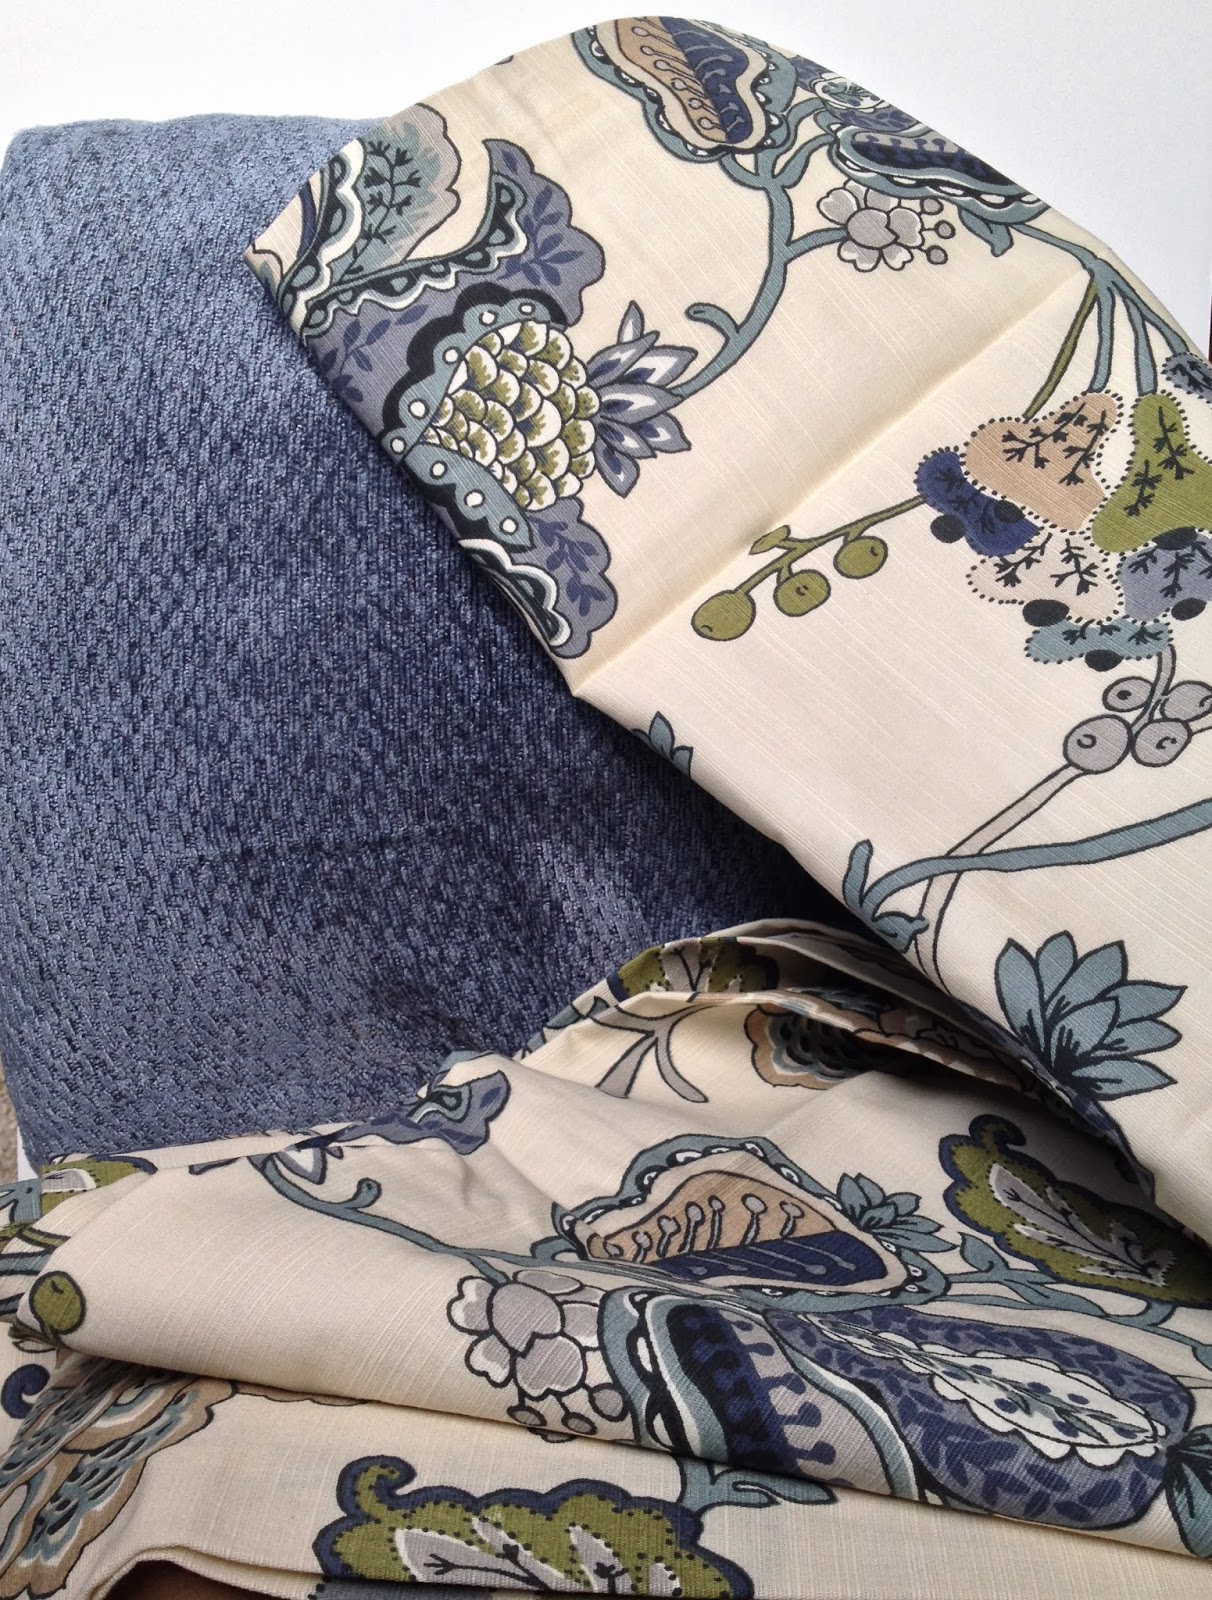 her lovely nest.: Tutorial: easy-sew envelope pillow covers.